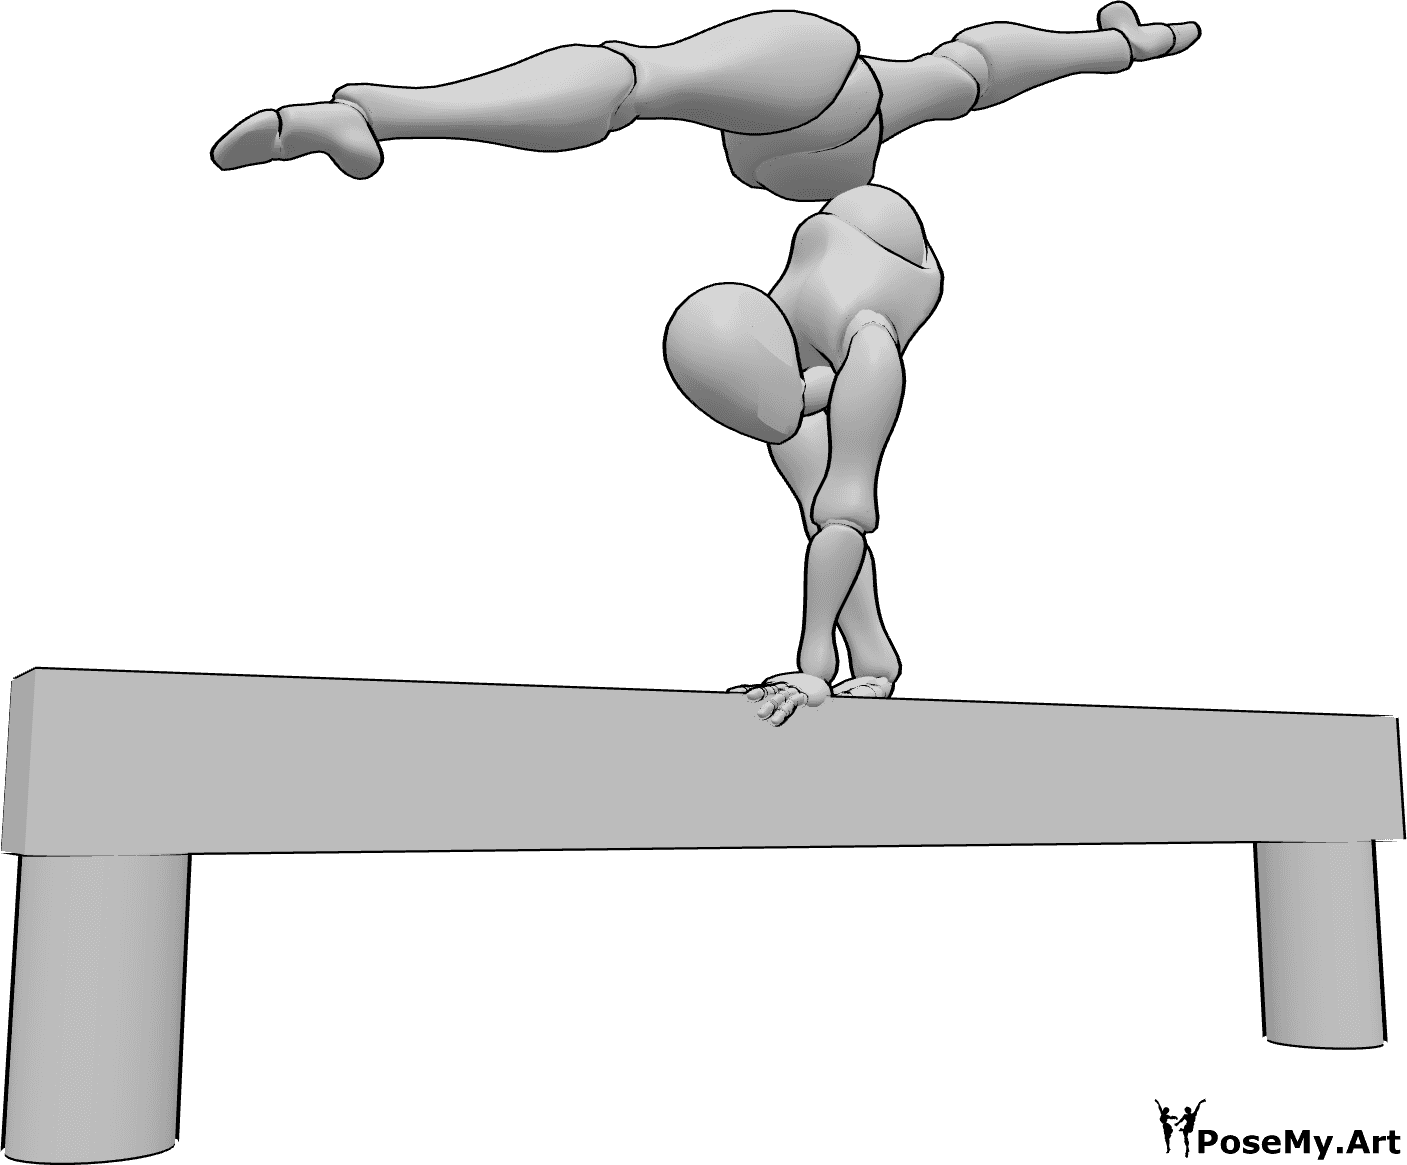 Referencia de poses- Postura de bóveda partida con las manos - La mujer está de pie en la bóveda y haciendo un split frontal en el aire